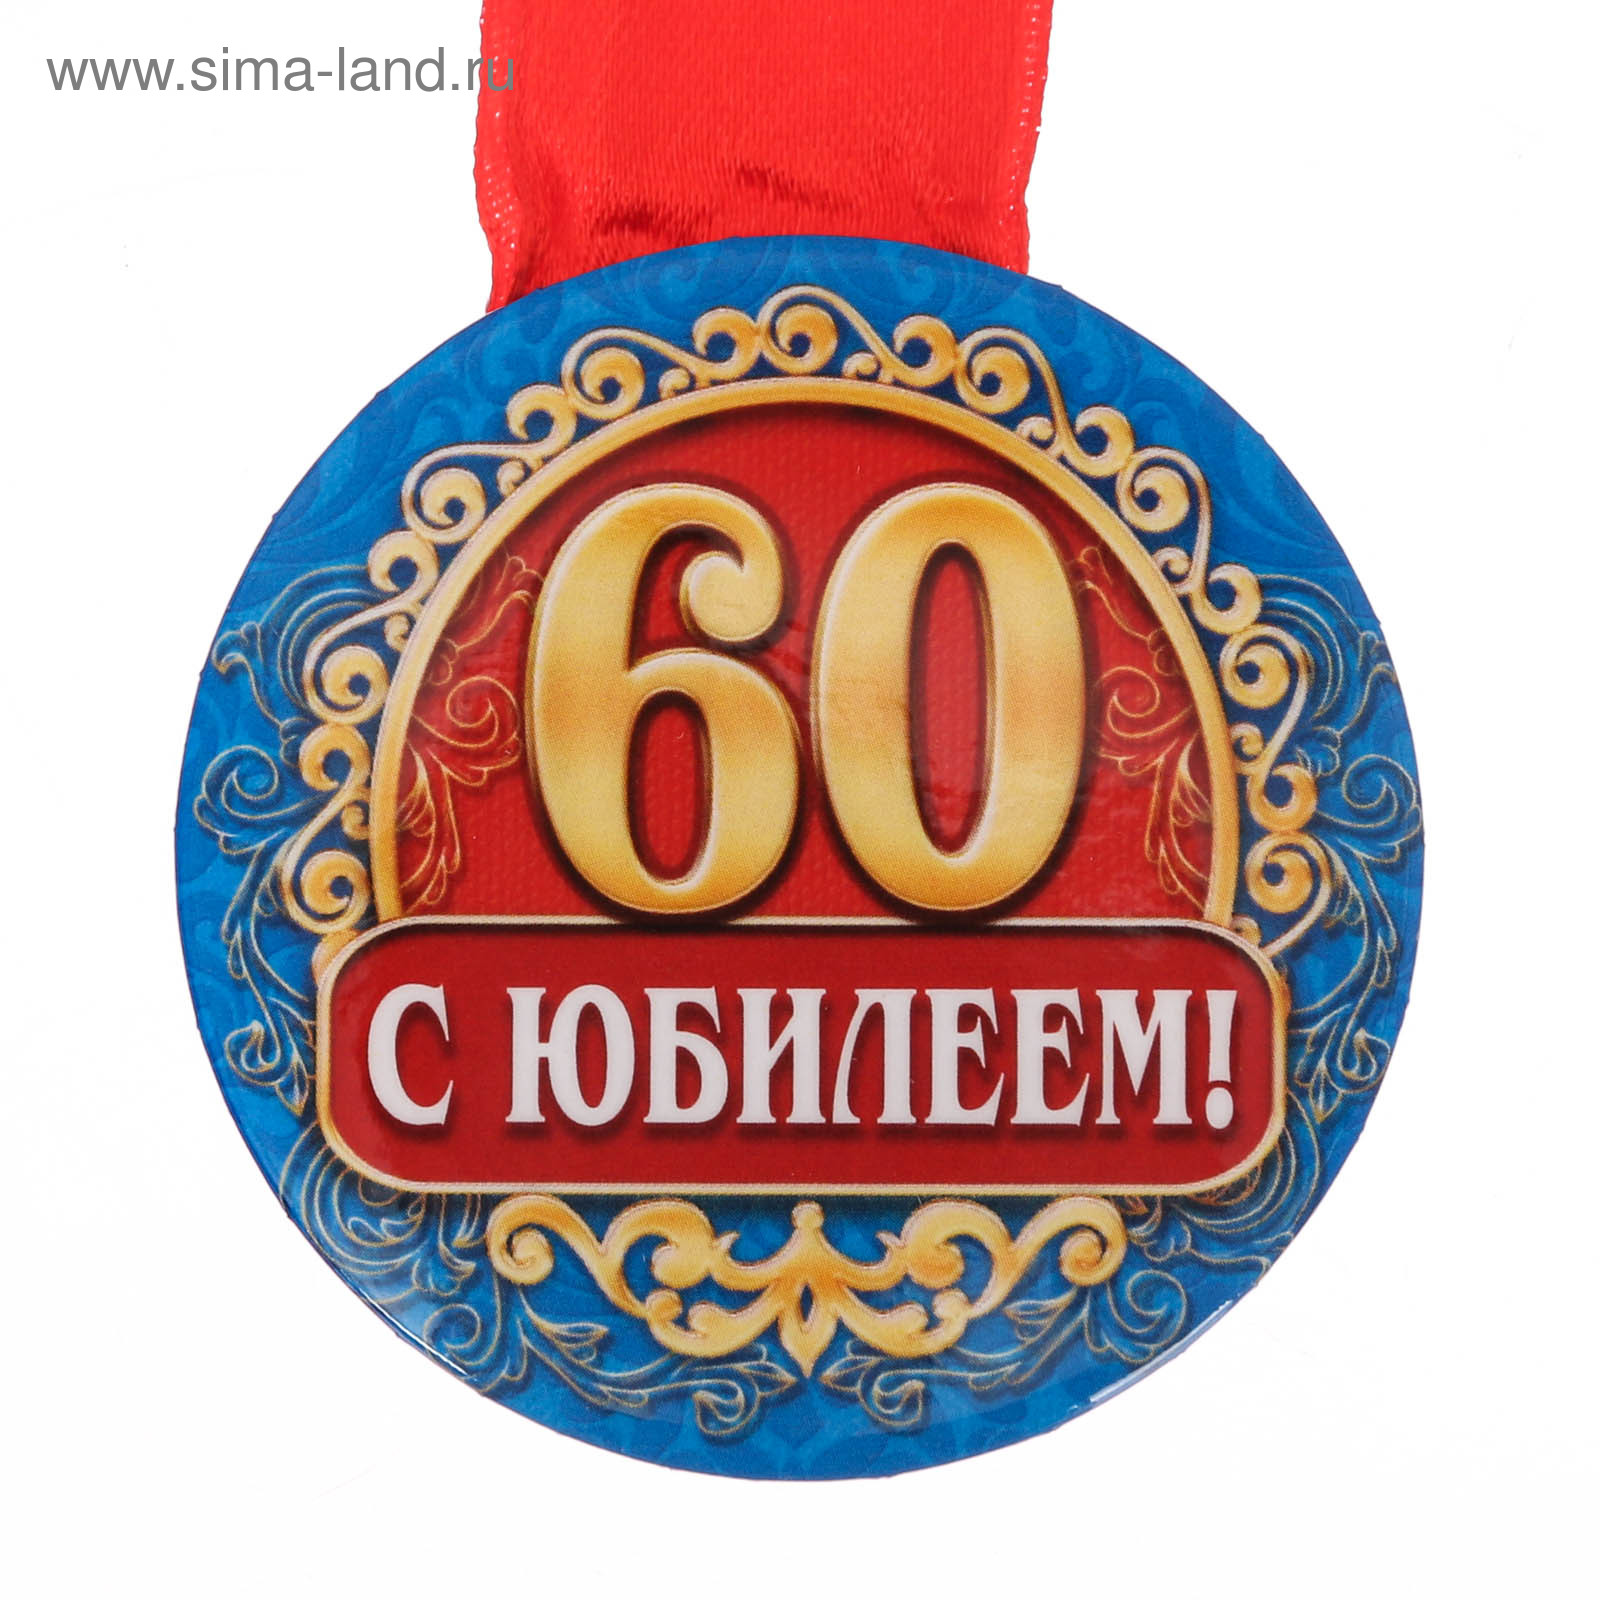 Юбилей 60 лет проведение. Медаль "60 лет". Медаль 60 лет на день рождения. Юбилейная медаль 60 лет мужчине. Медаль юбиляру 60 лет мужчине.